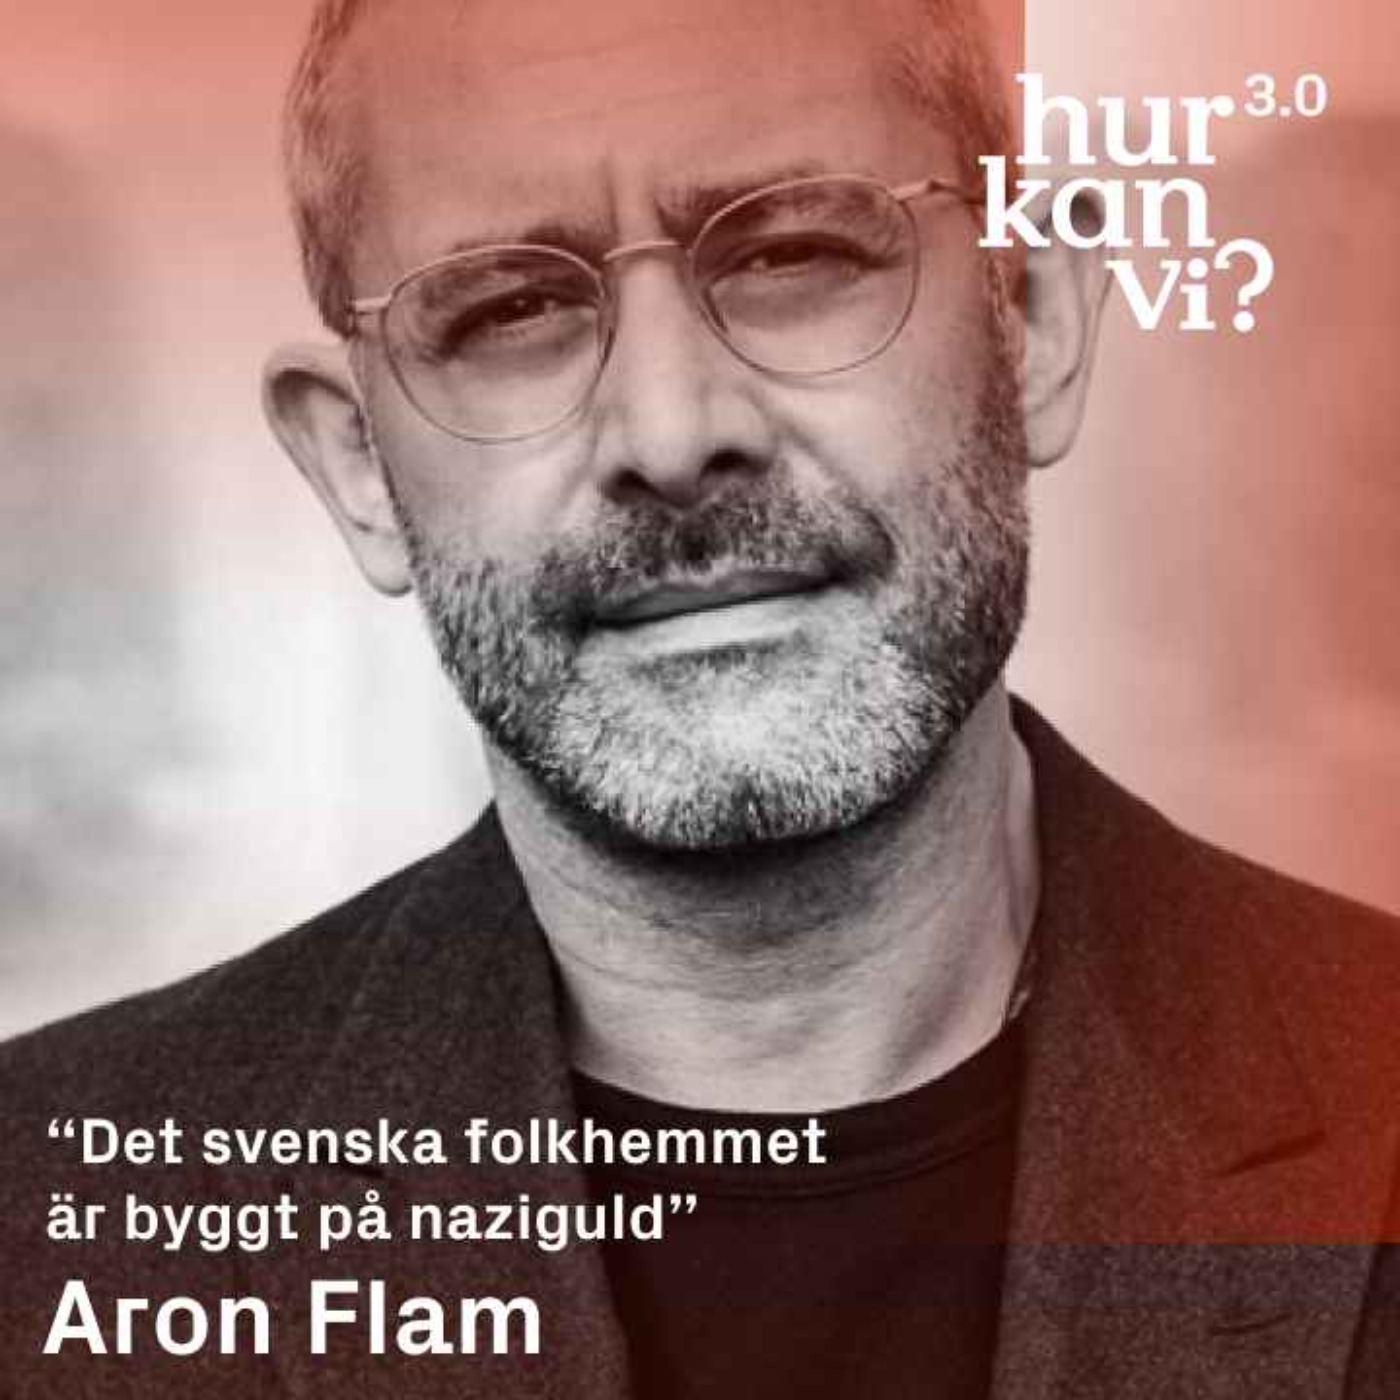 Aron Flam - “Det svenska folkhemmet är byggt på naziguld”